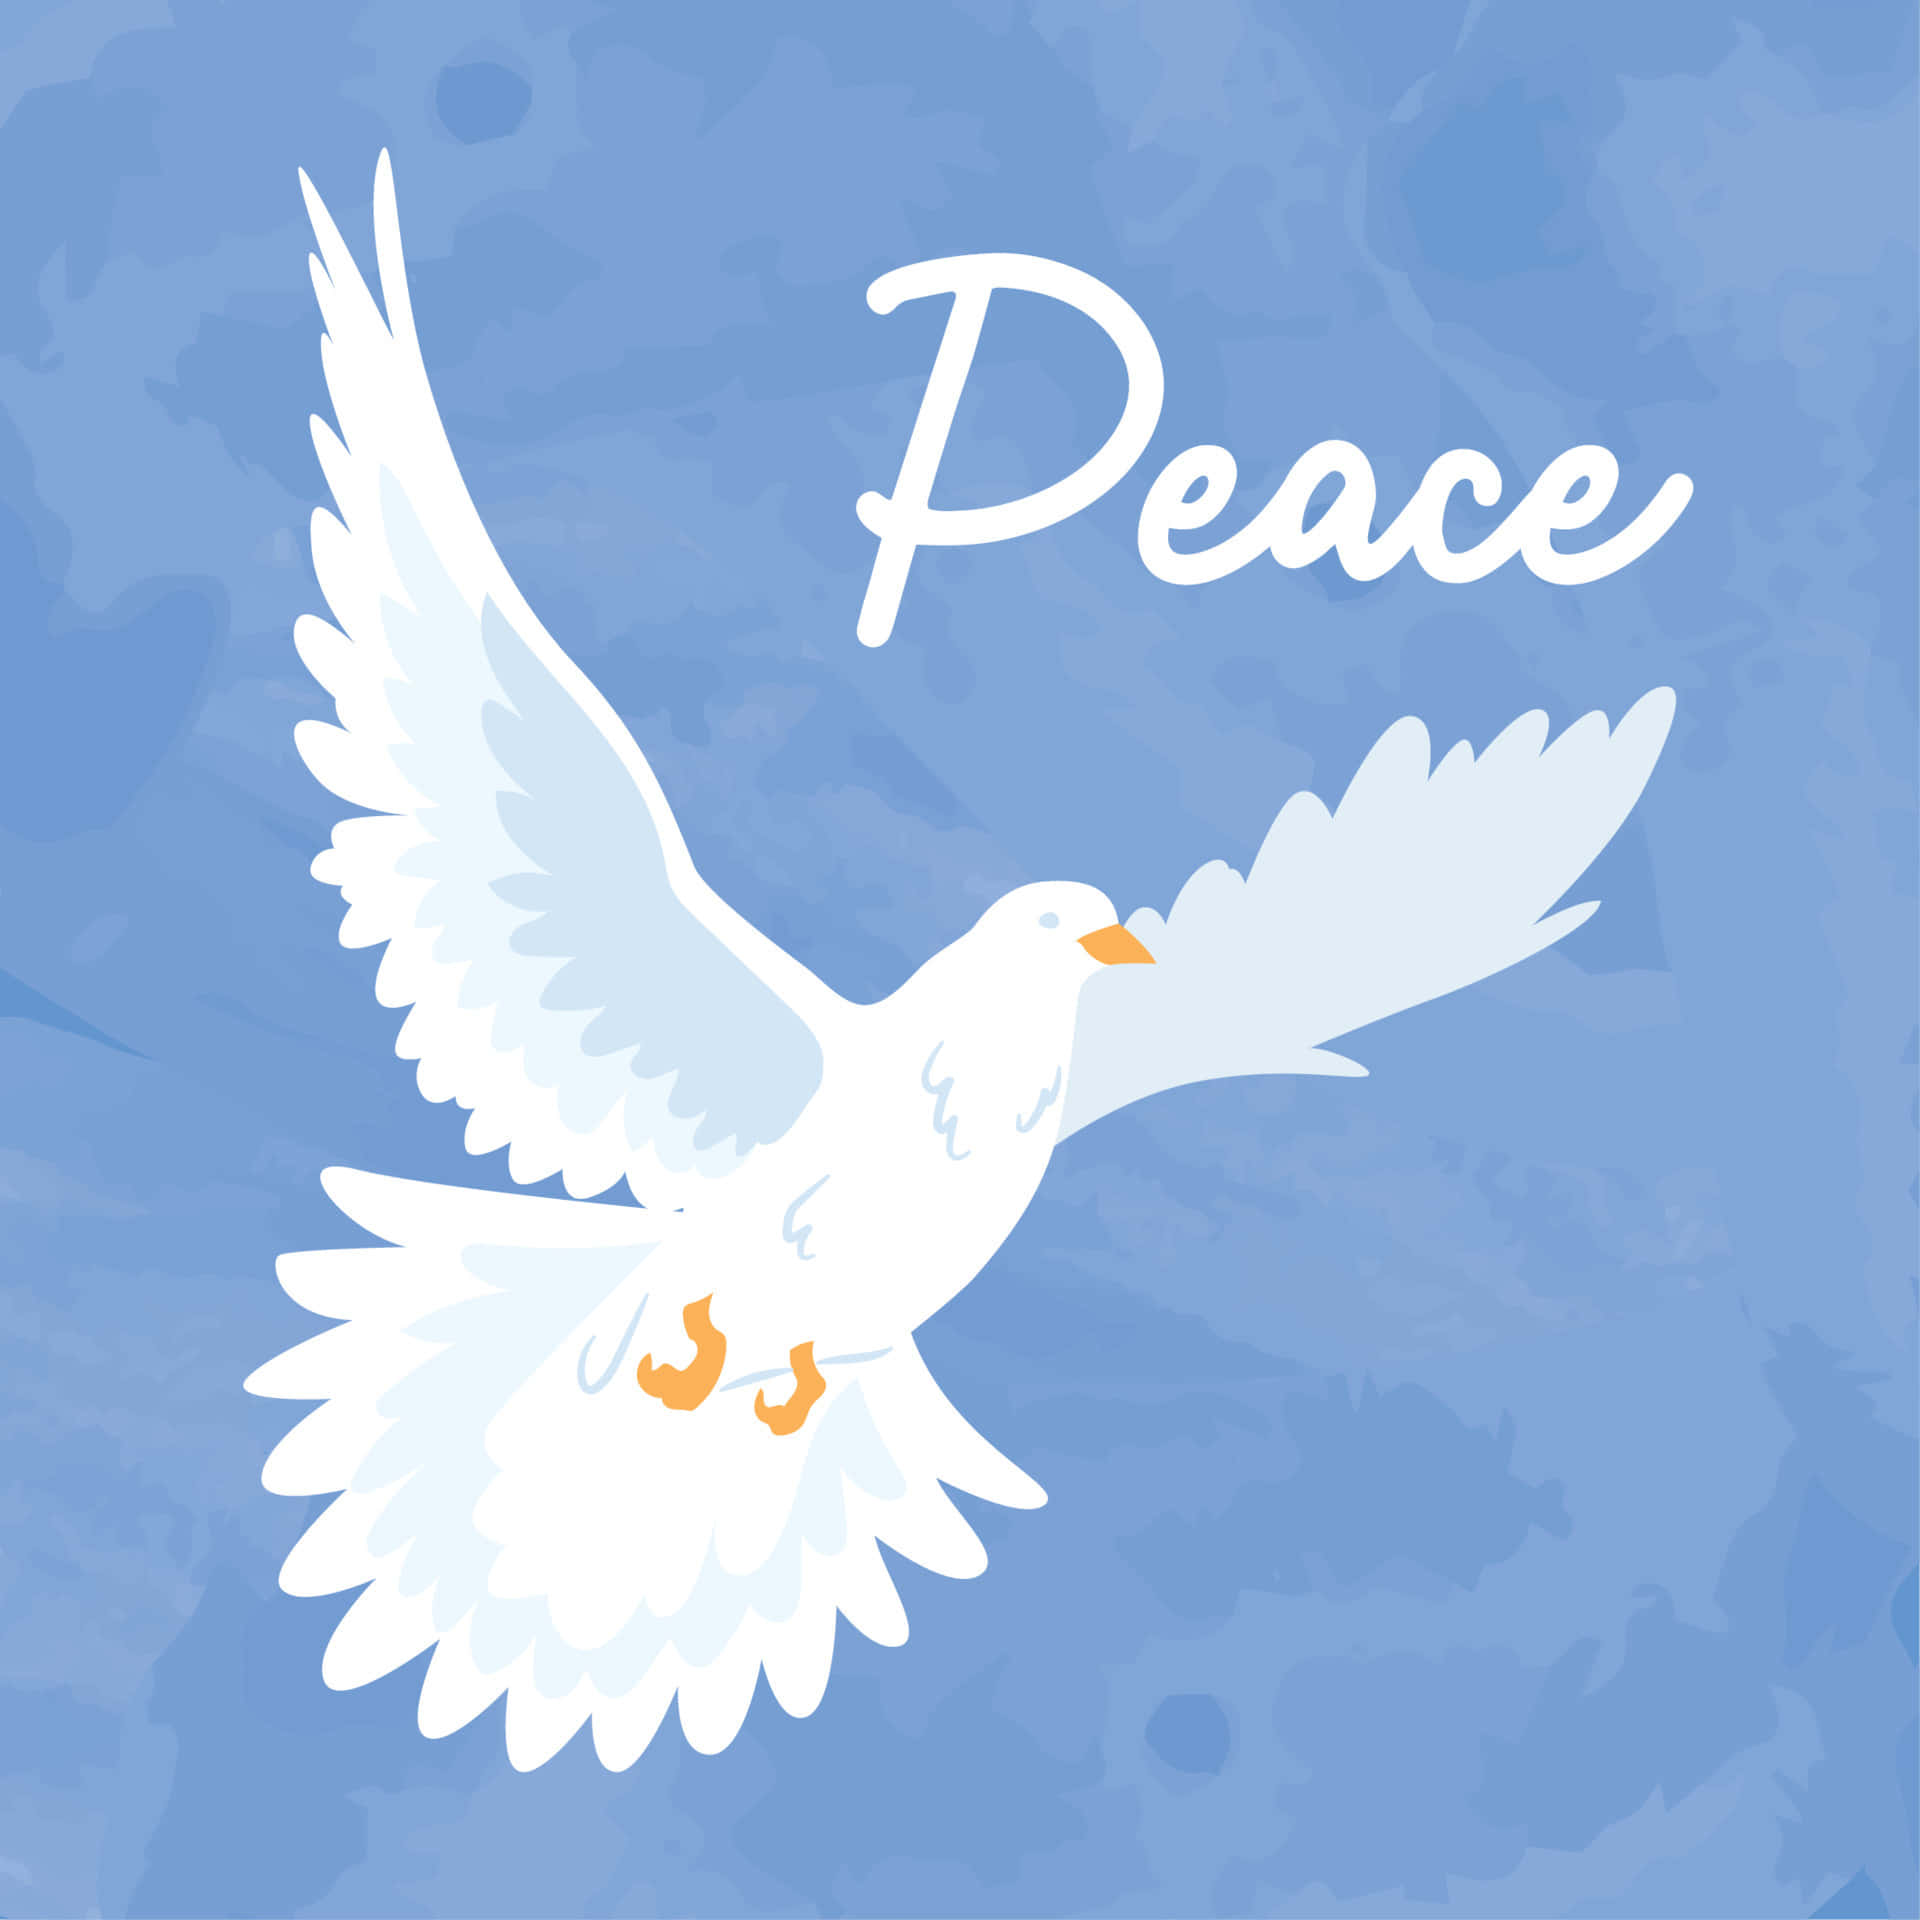 Difundeel Mensaje De Paz Por Todo El Mundo